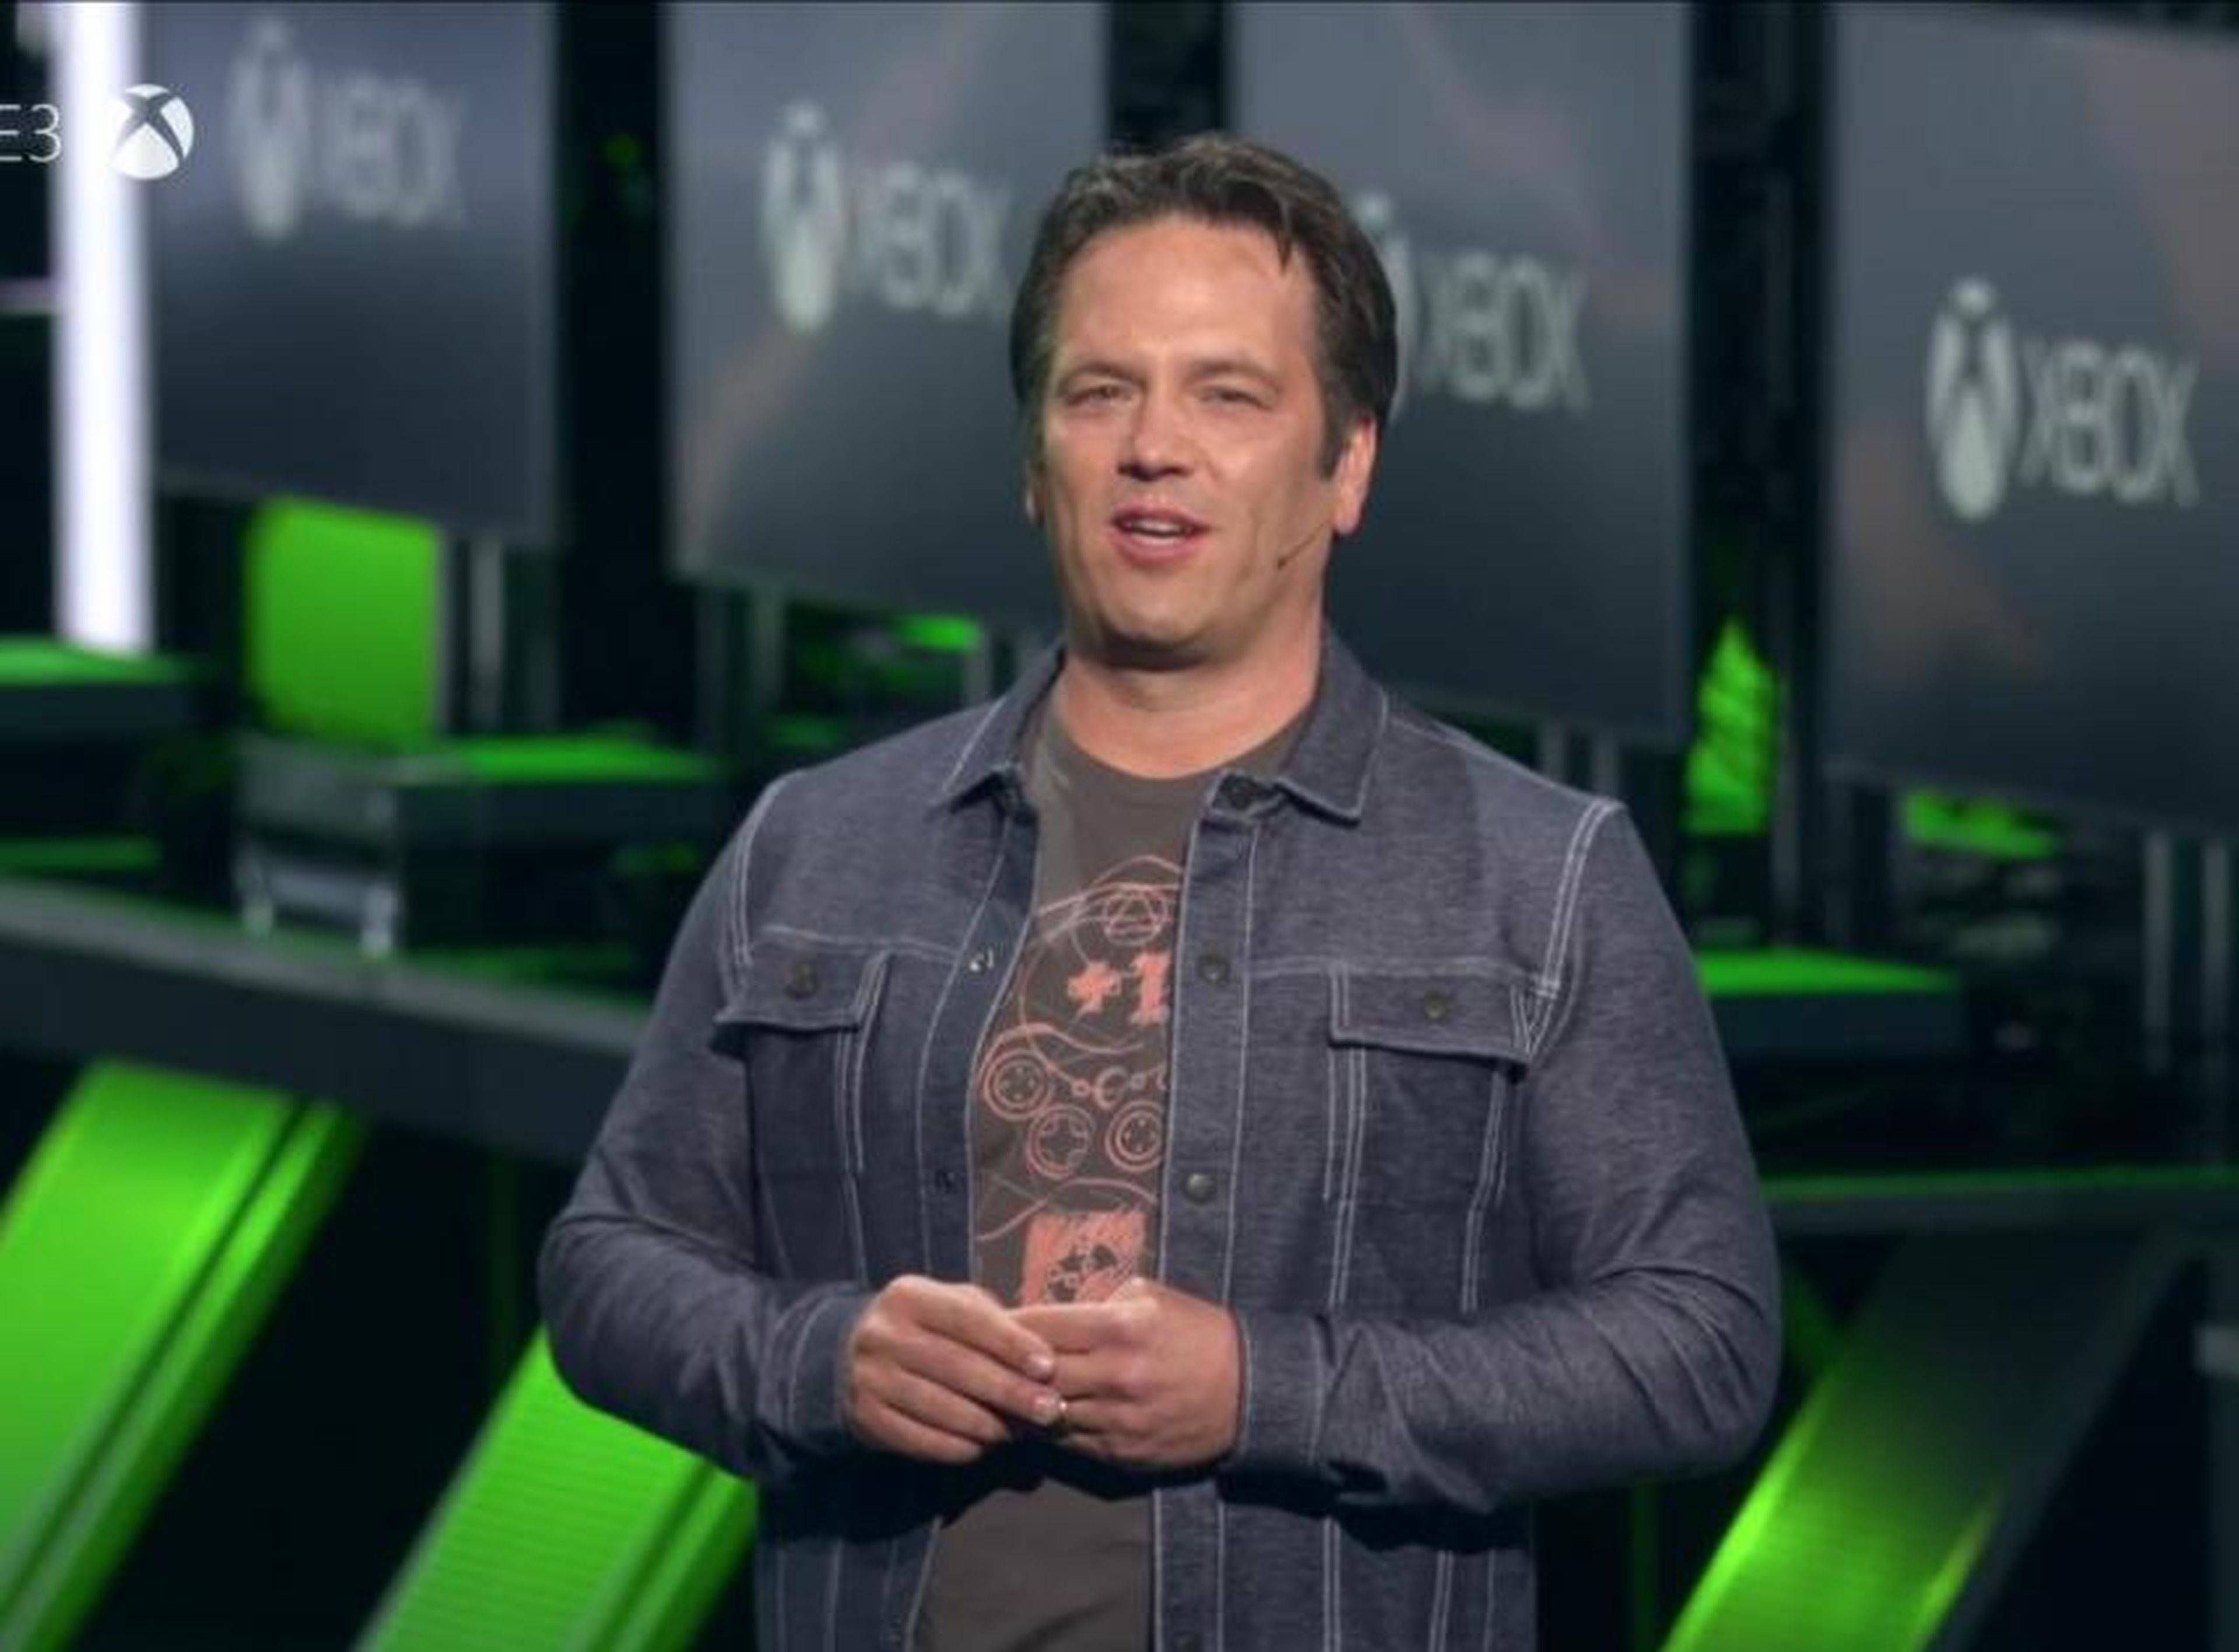 El ejecutivo de Microsoft Phil Spencer fue el anfitrión de la sesión informativa de Xbox en el E3 2018, la feria anual de videojuegos en Los Ángeles.